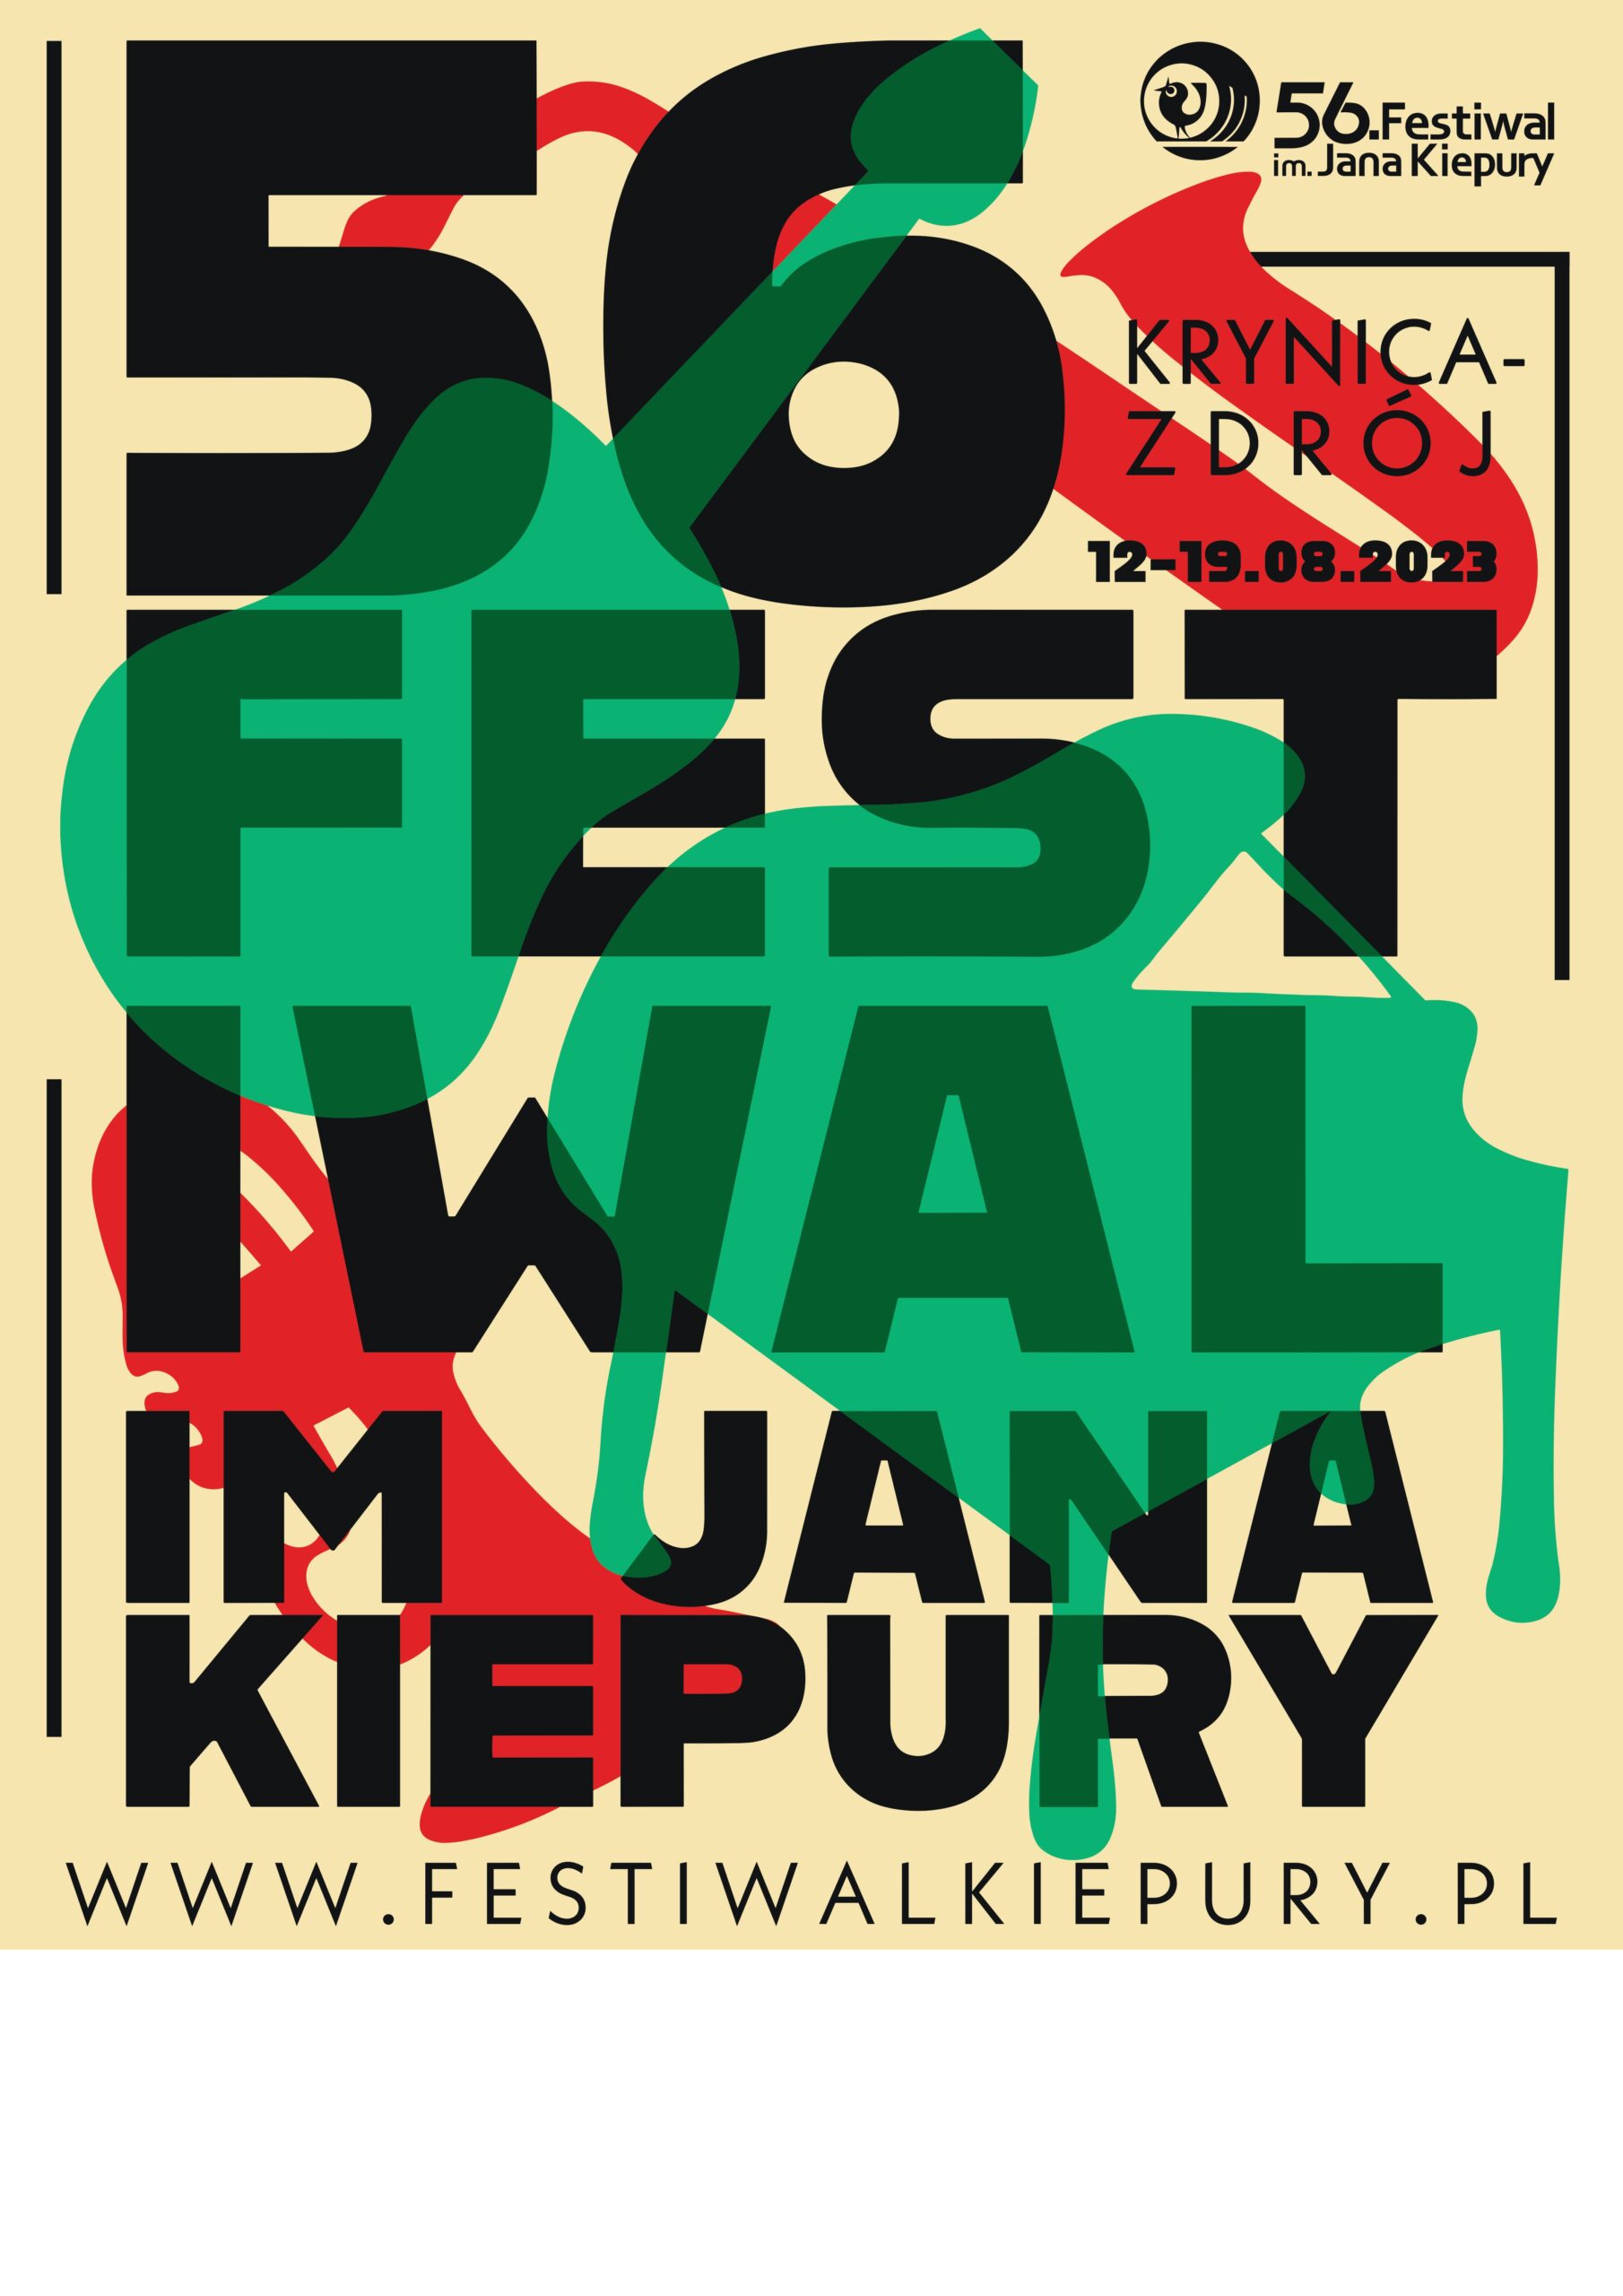 [Krynica-Zdrój]: 56 Festiwal im. Jana Kiepury